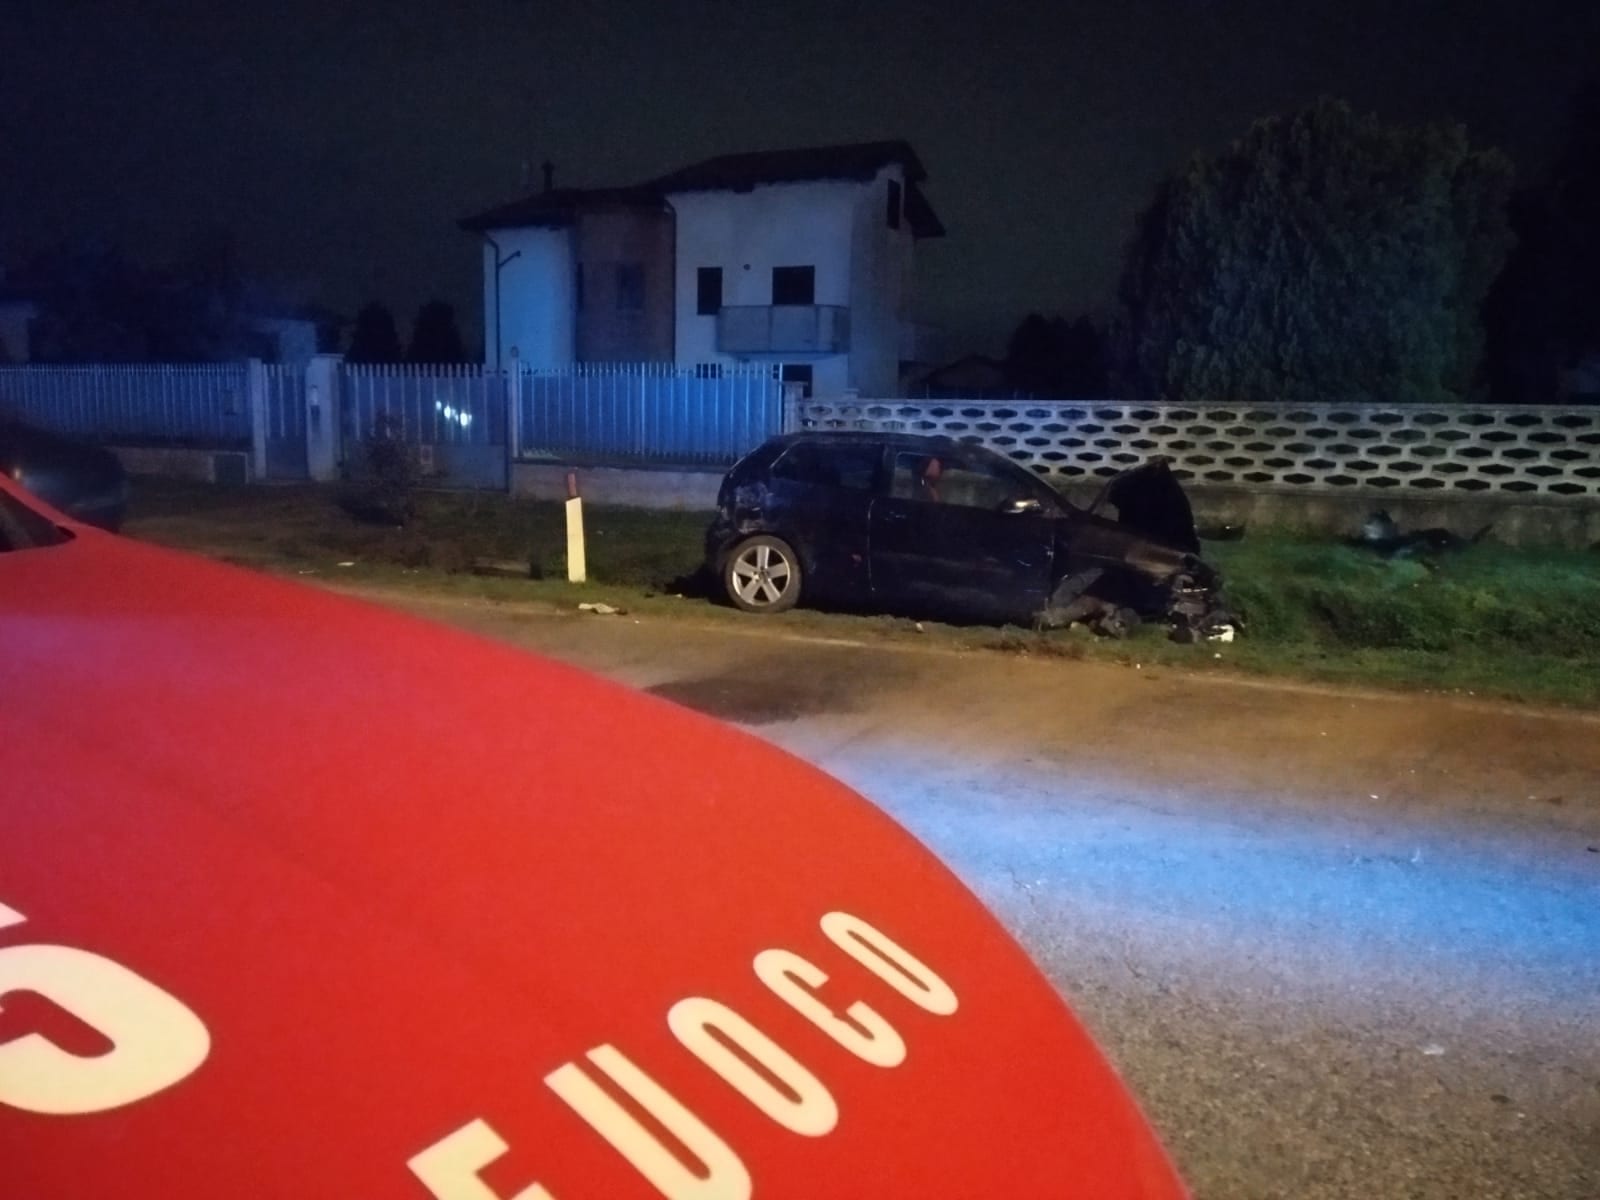 Ieri su ilS: la donazione di Jovanotti, l’incendio canna fumaria ad Origgio, auto contro recinzione